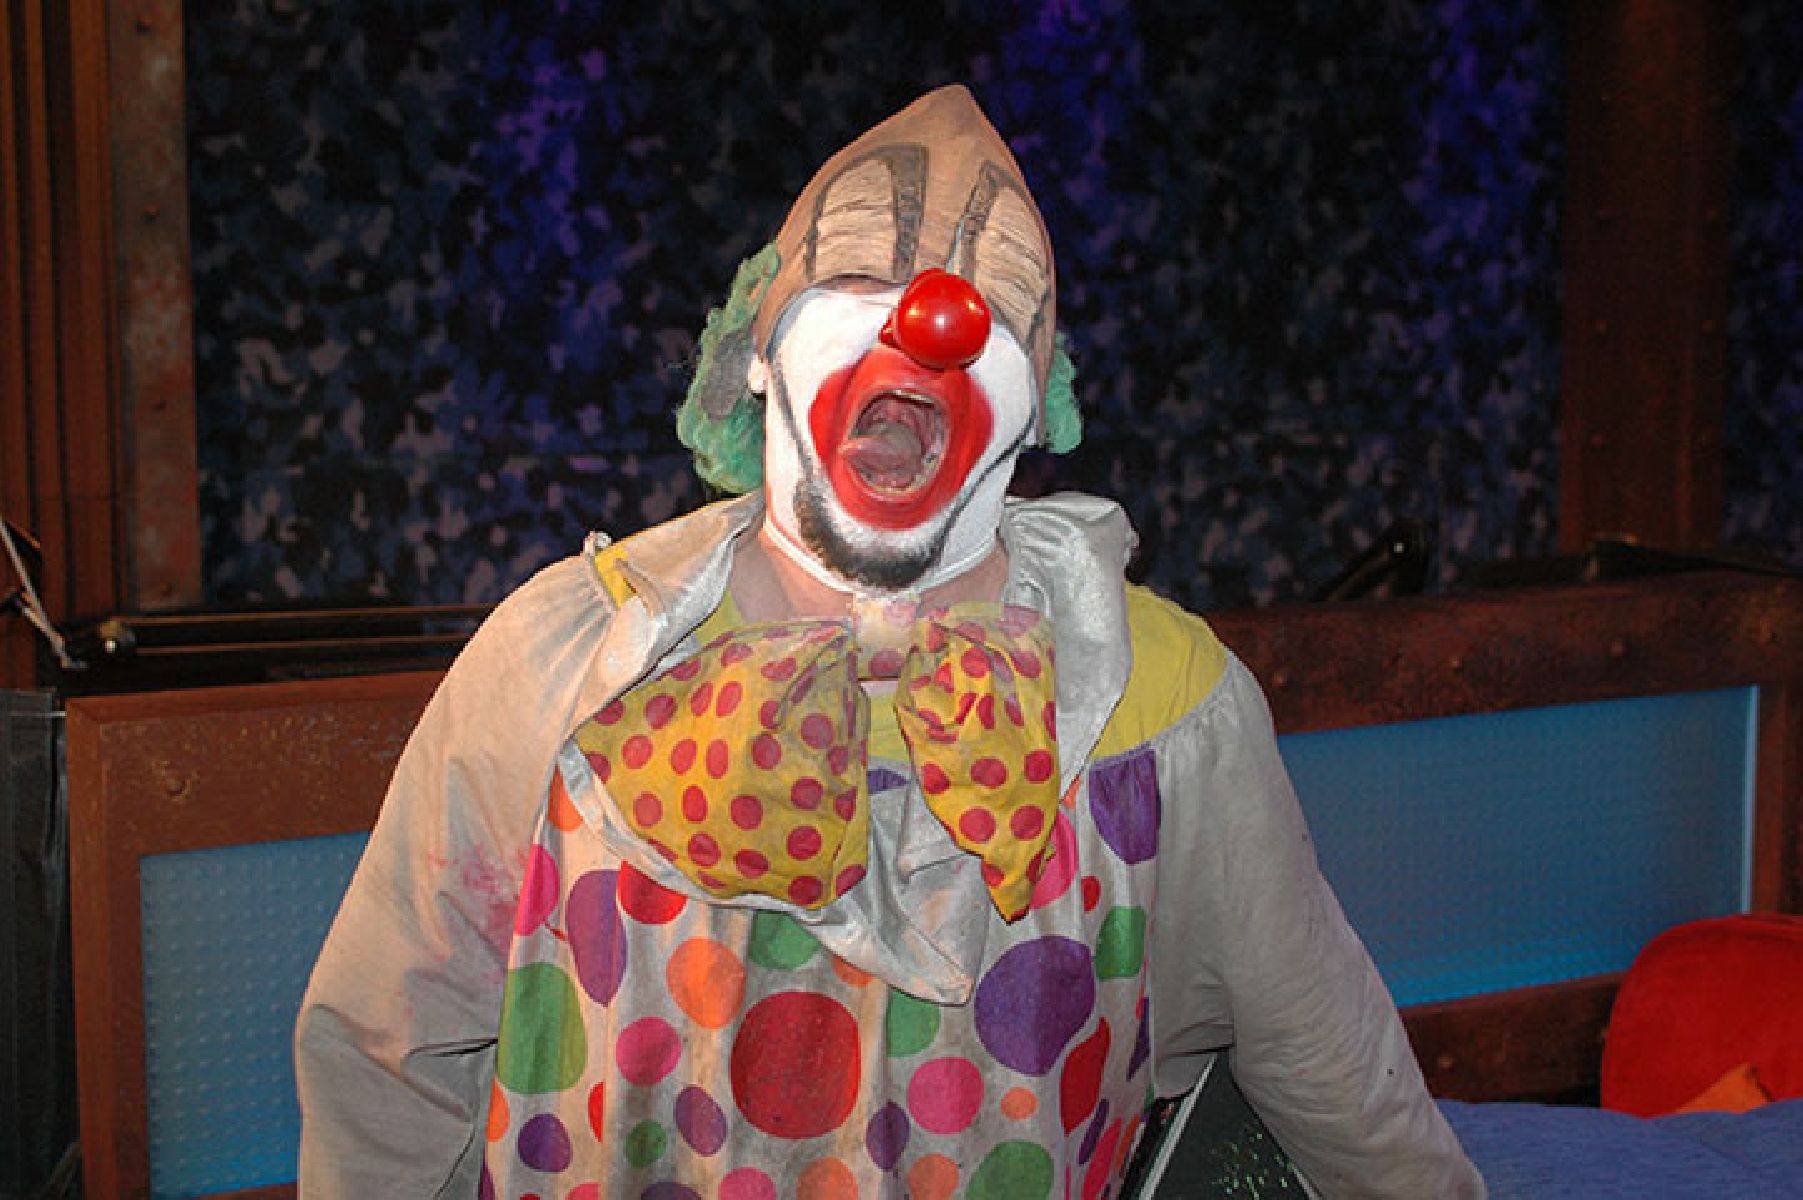 Riley Martin V. Clown.